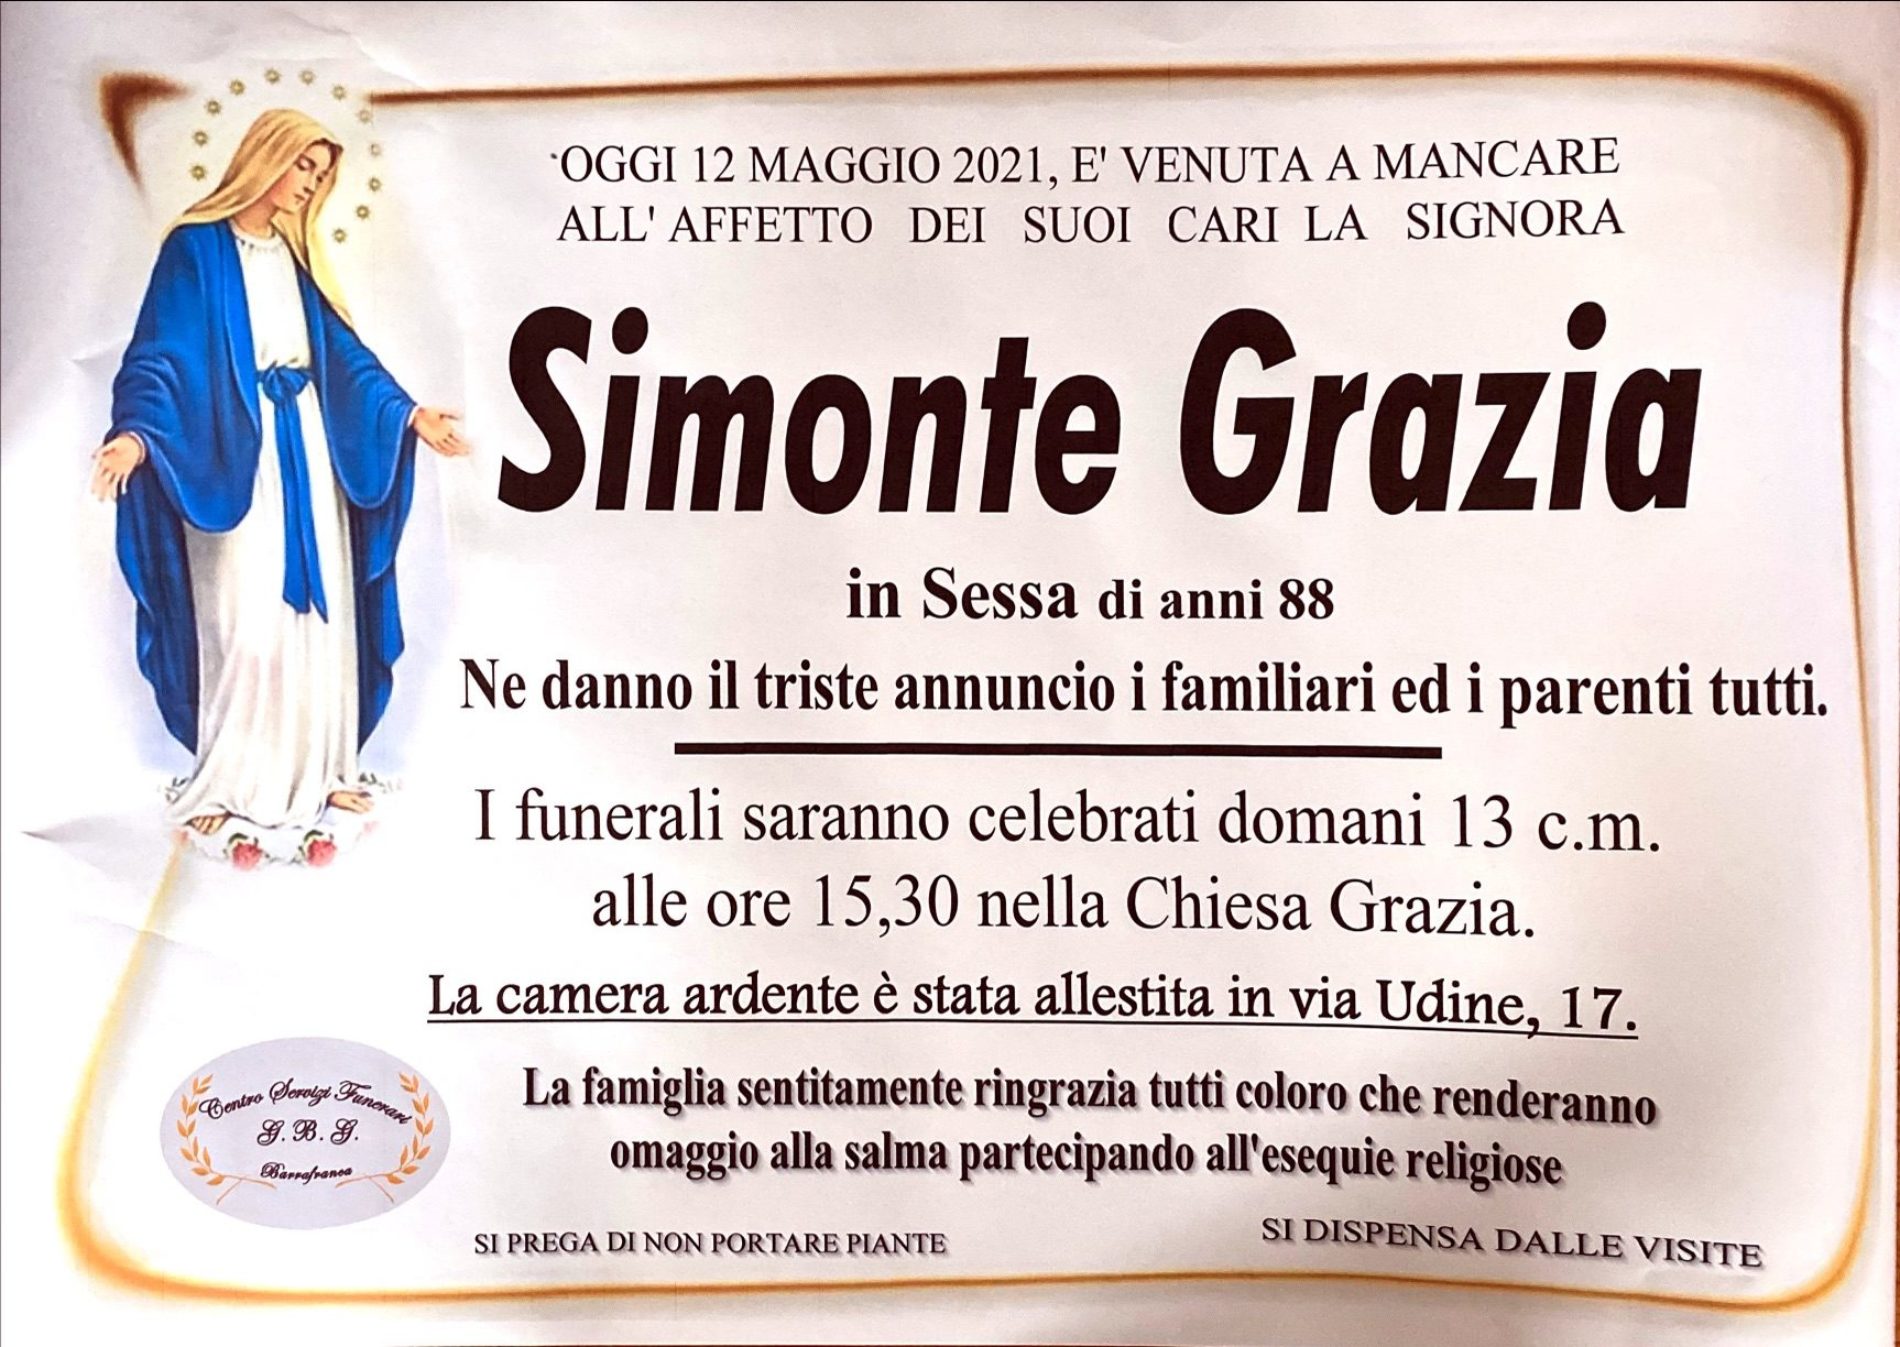 Annuncio servizi funerari agenzia G.B.G. sig.ra Simonte Grazia in Sessa di anni 88